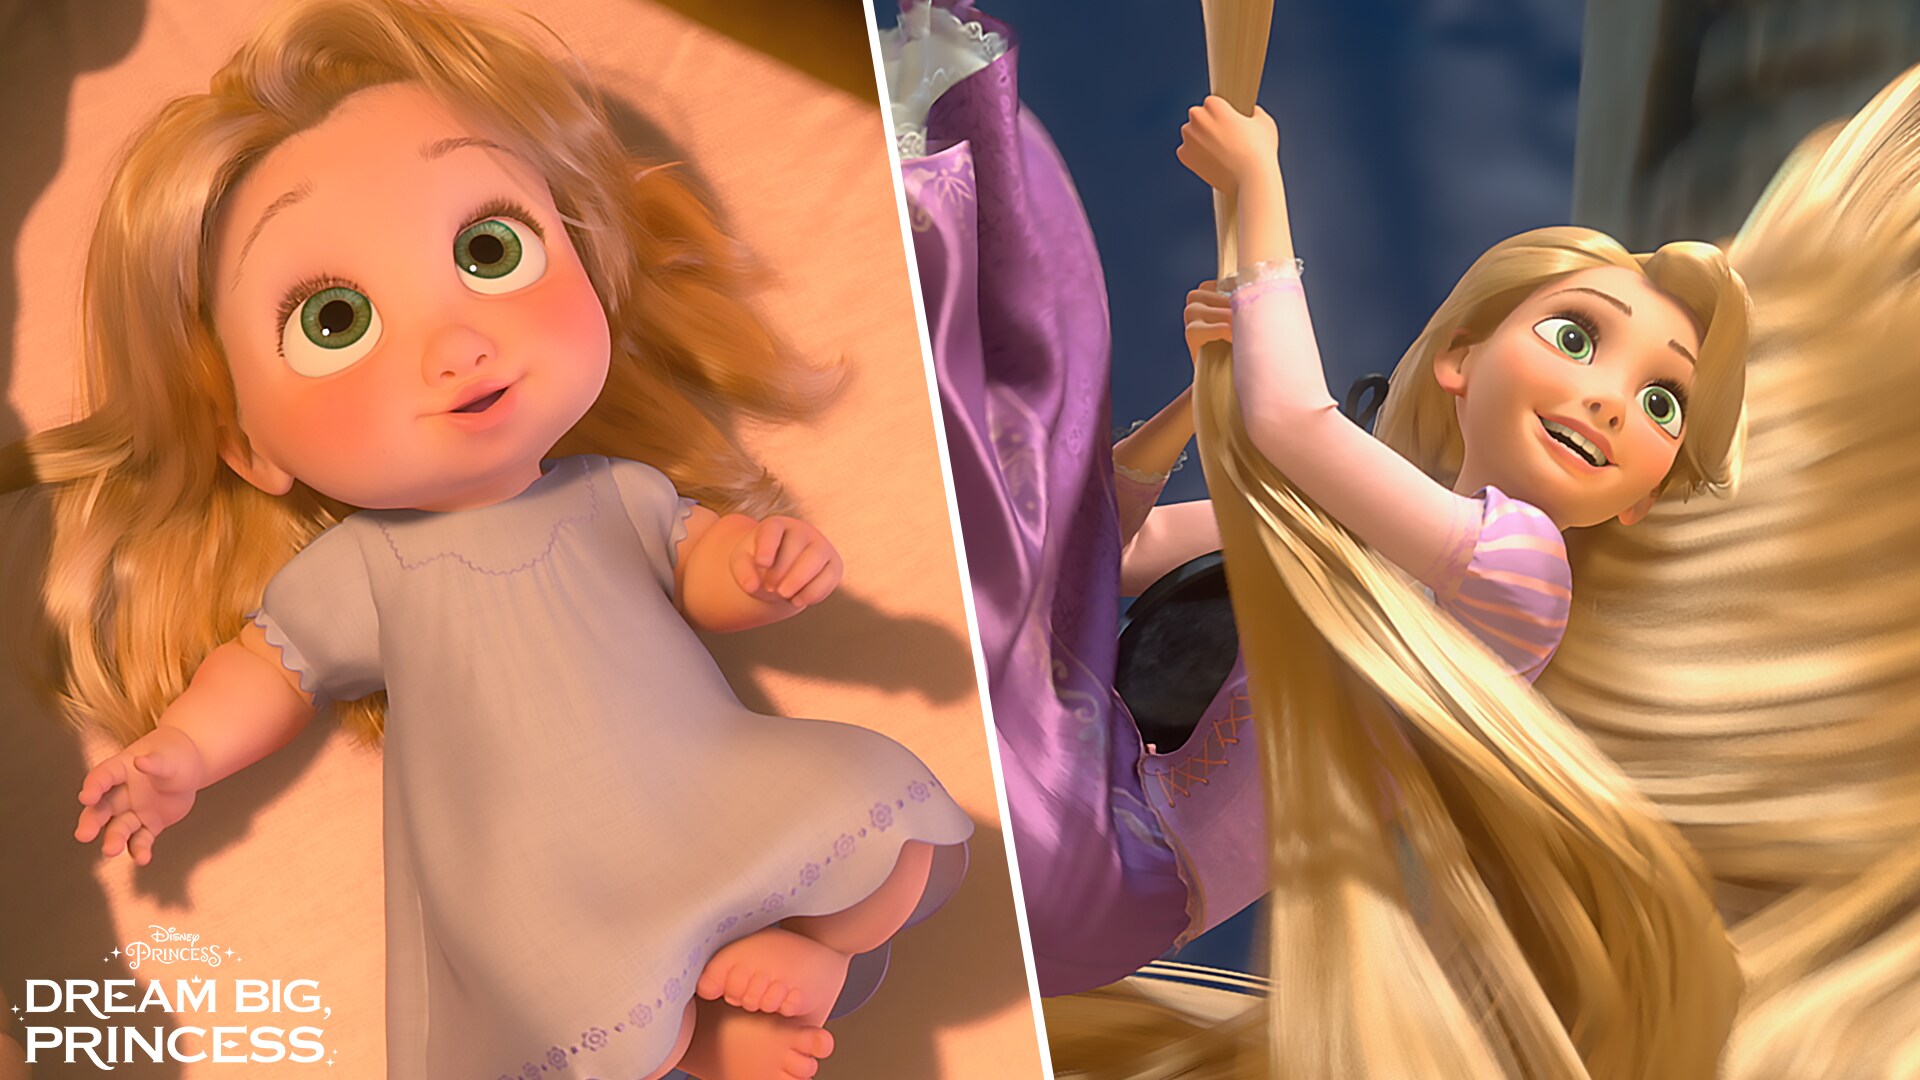 Dream Big, Princess – Who Will She Become | Disney